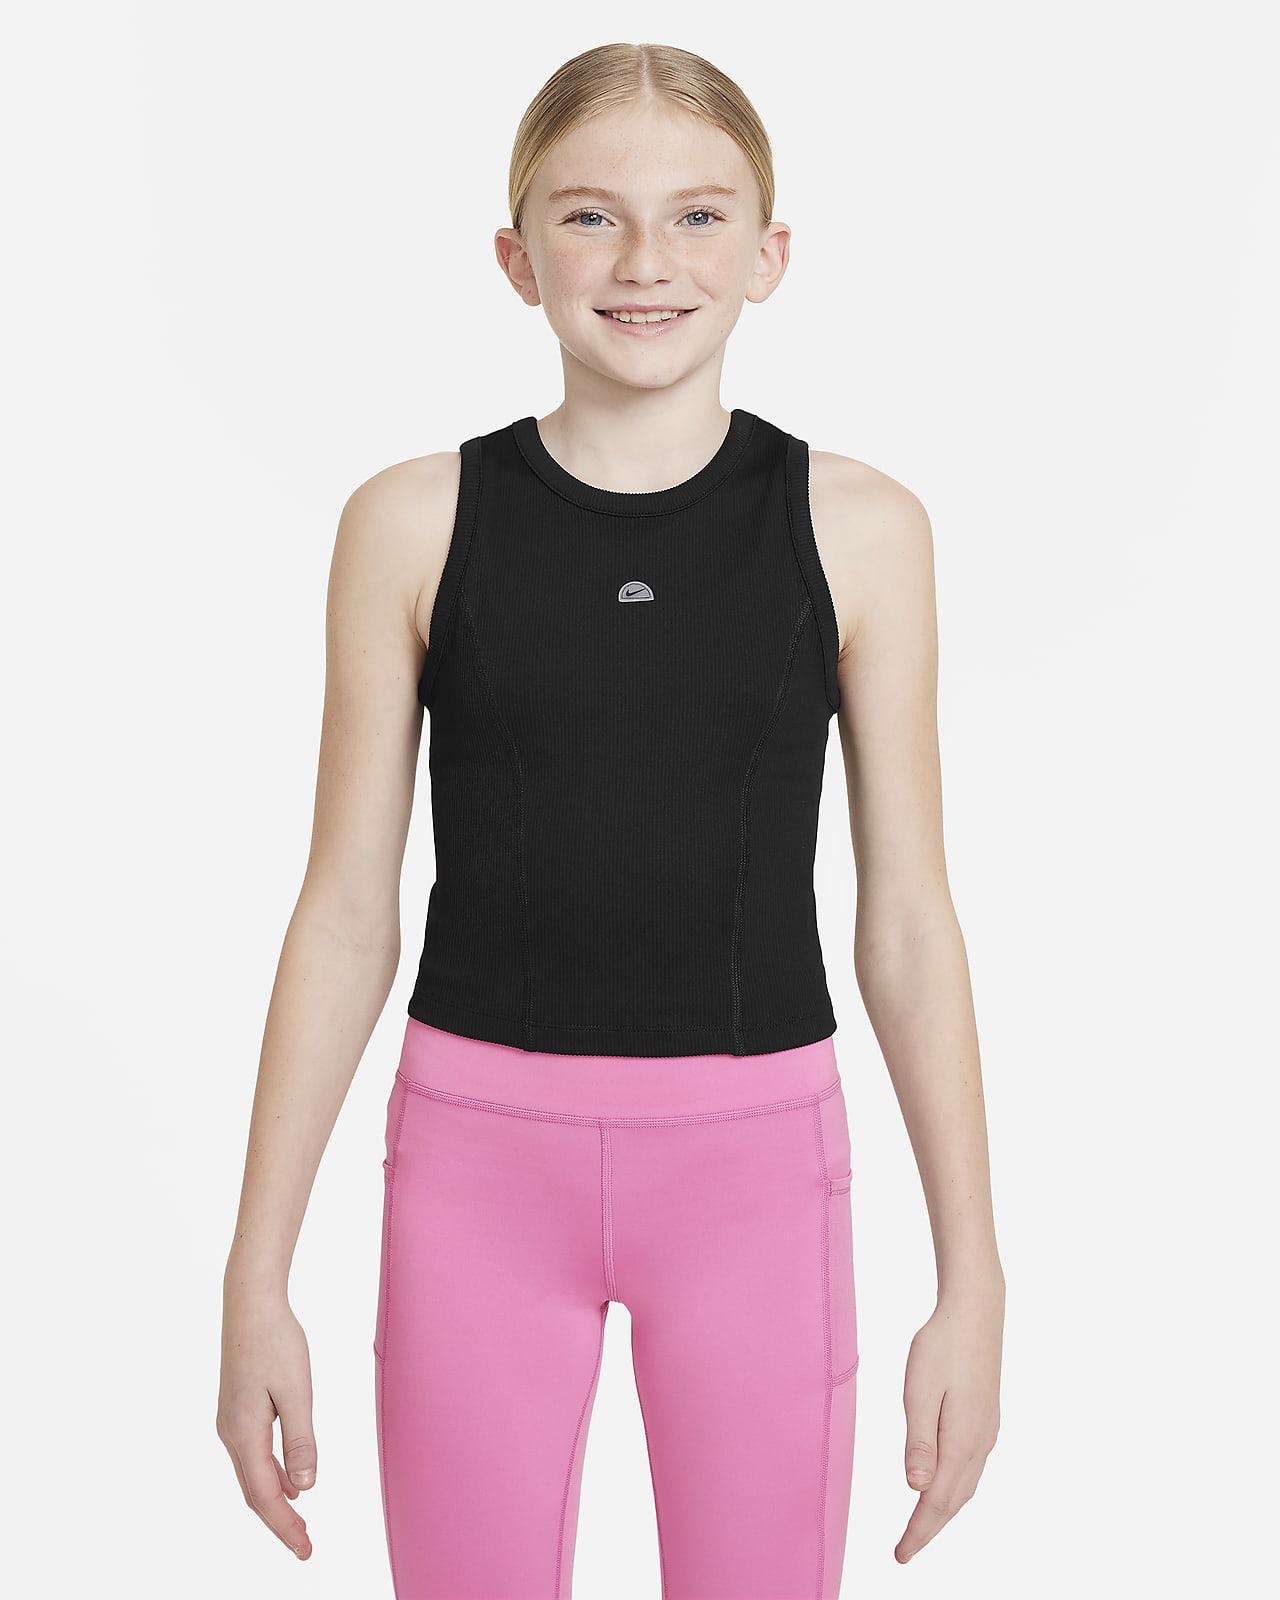 Koszulka bez rękawów dla dziewcząt Dri-FIT Nike